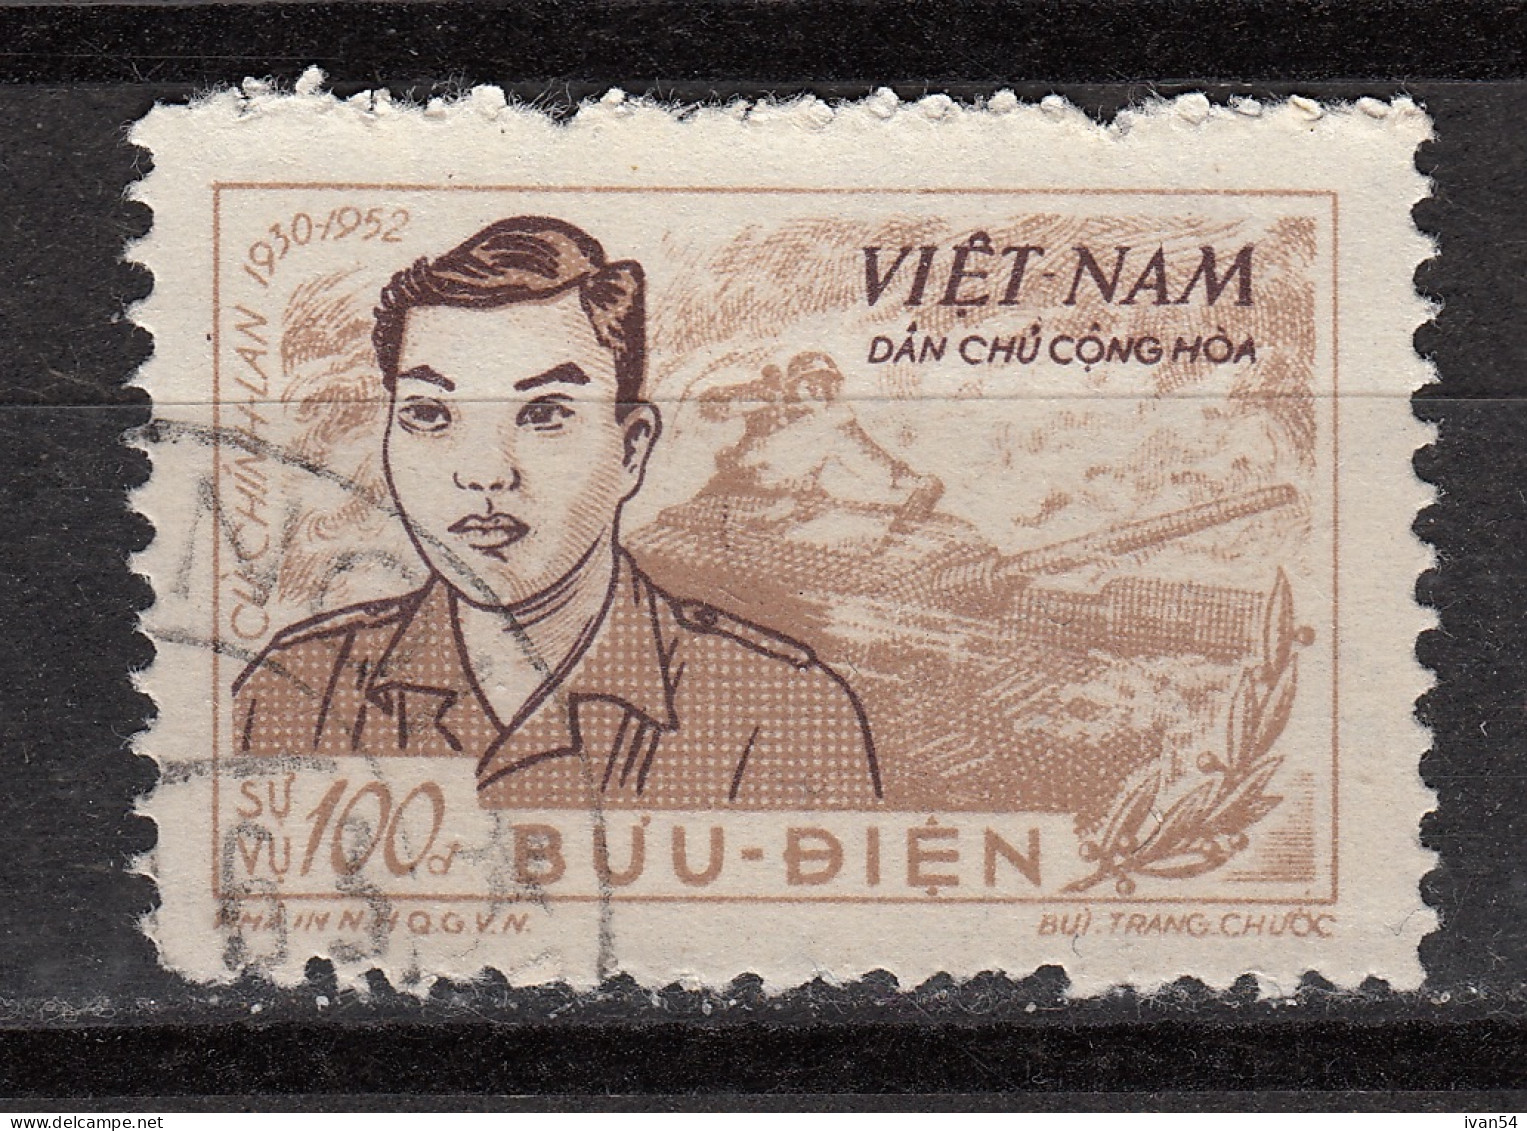 Vietnam (Northern) : 99 (0) – Cu Chin Lan, Army Hero - (1956) - Viêt-Nam